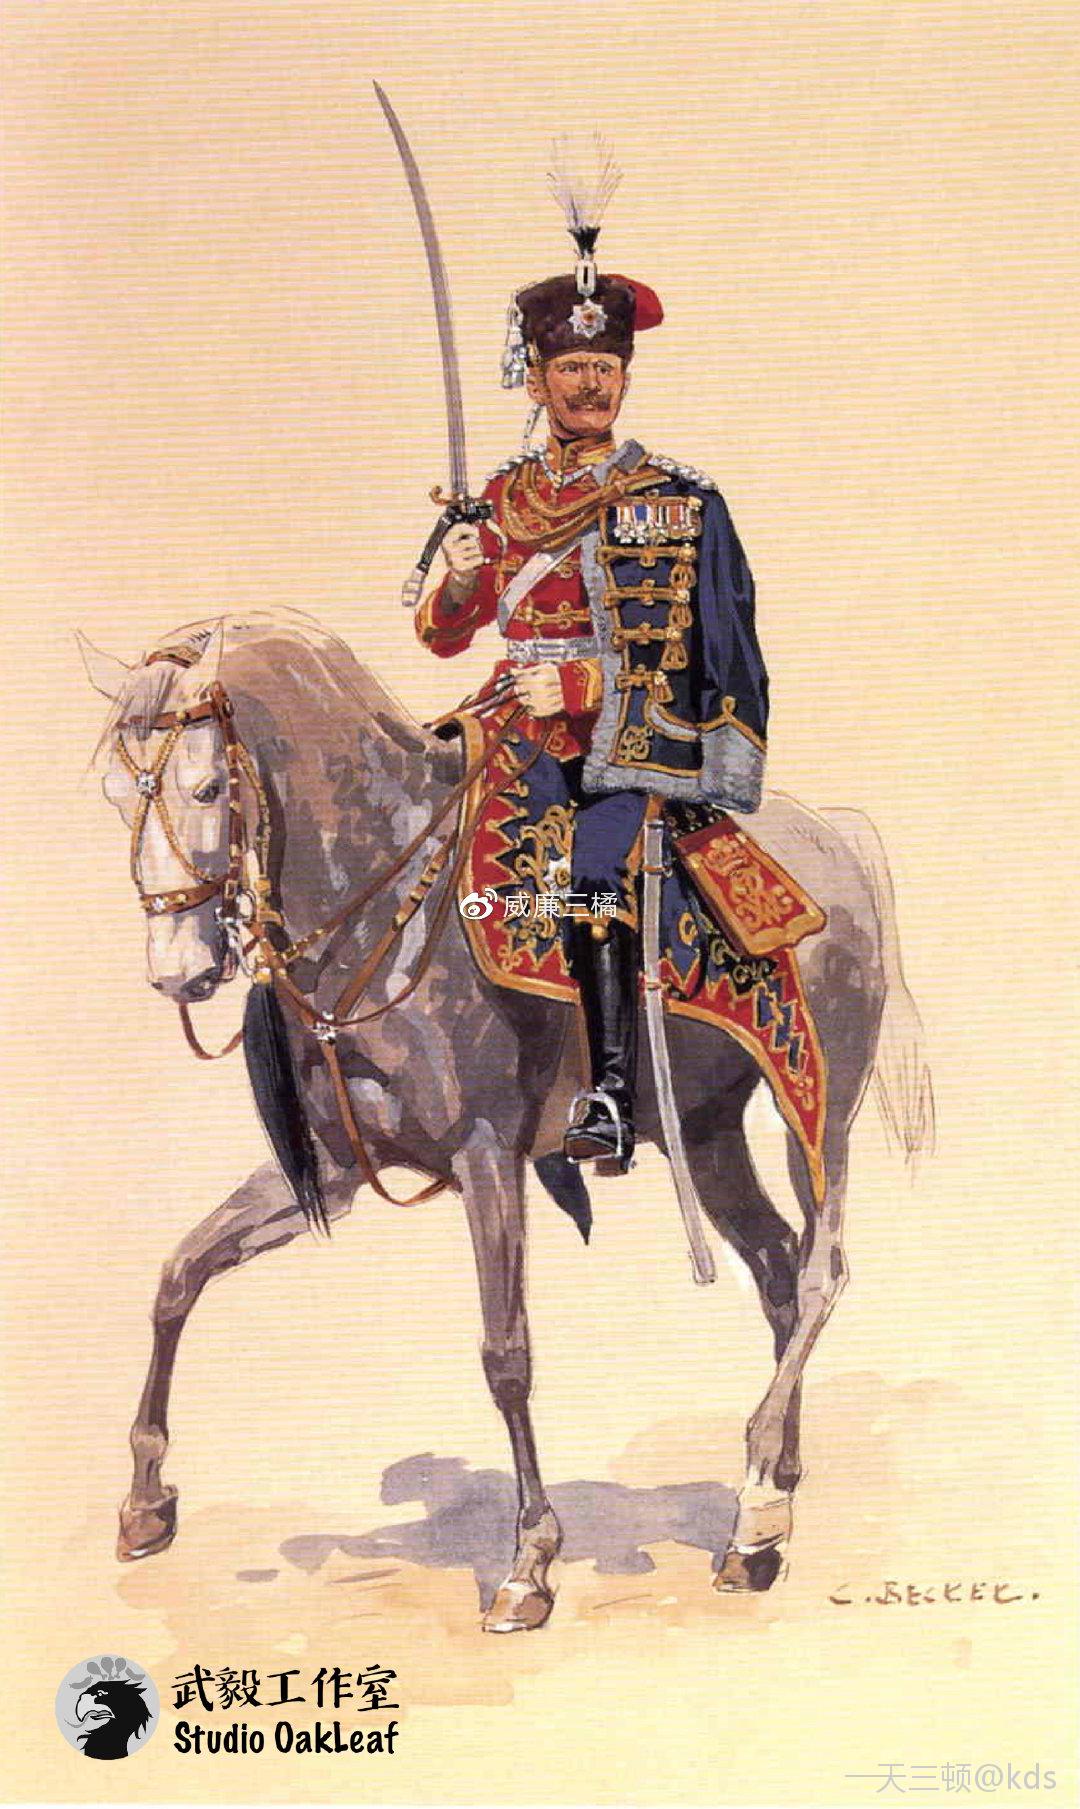 普鲁士近卫骠骑兵团少校 注释:该团建于1815年,柏林驻防;以其标志性